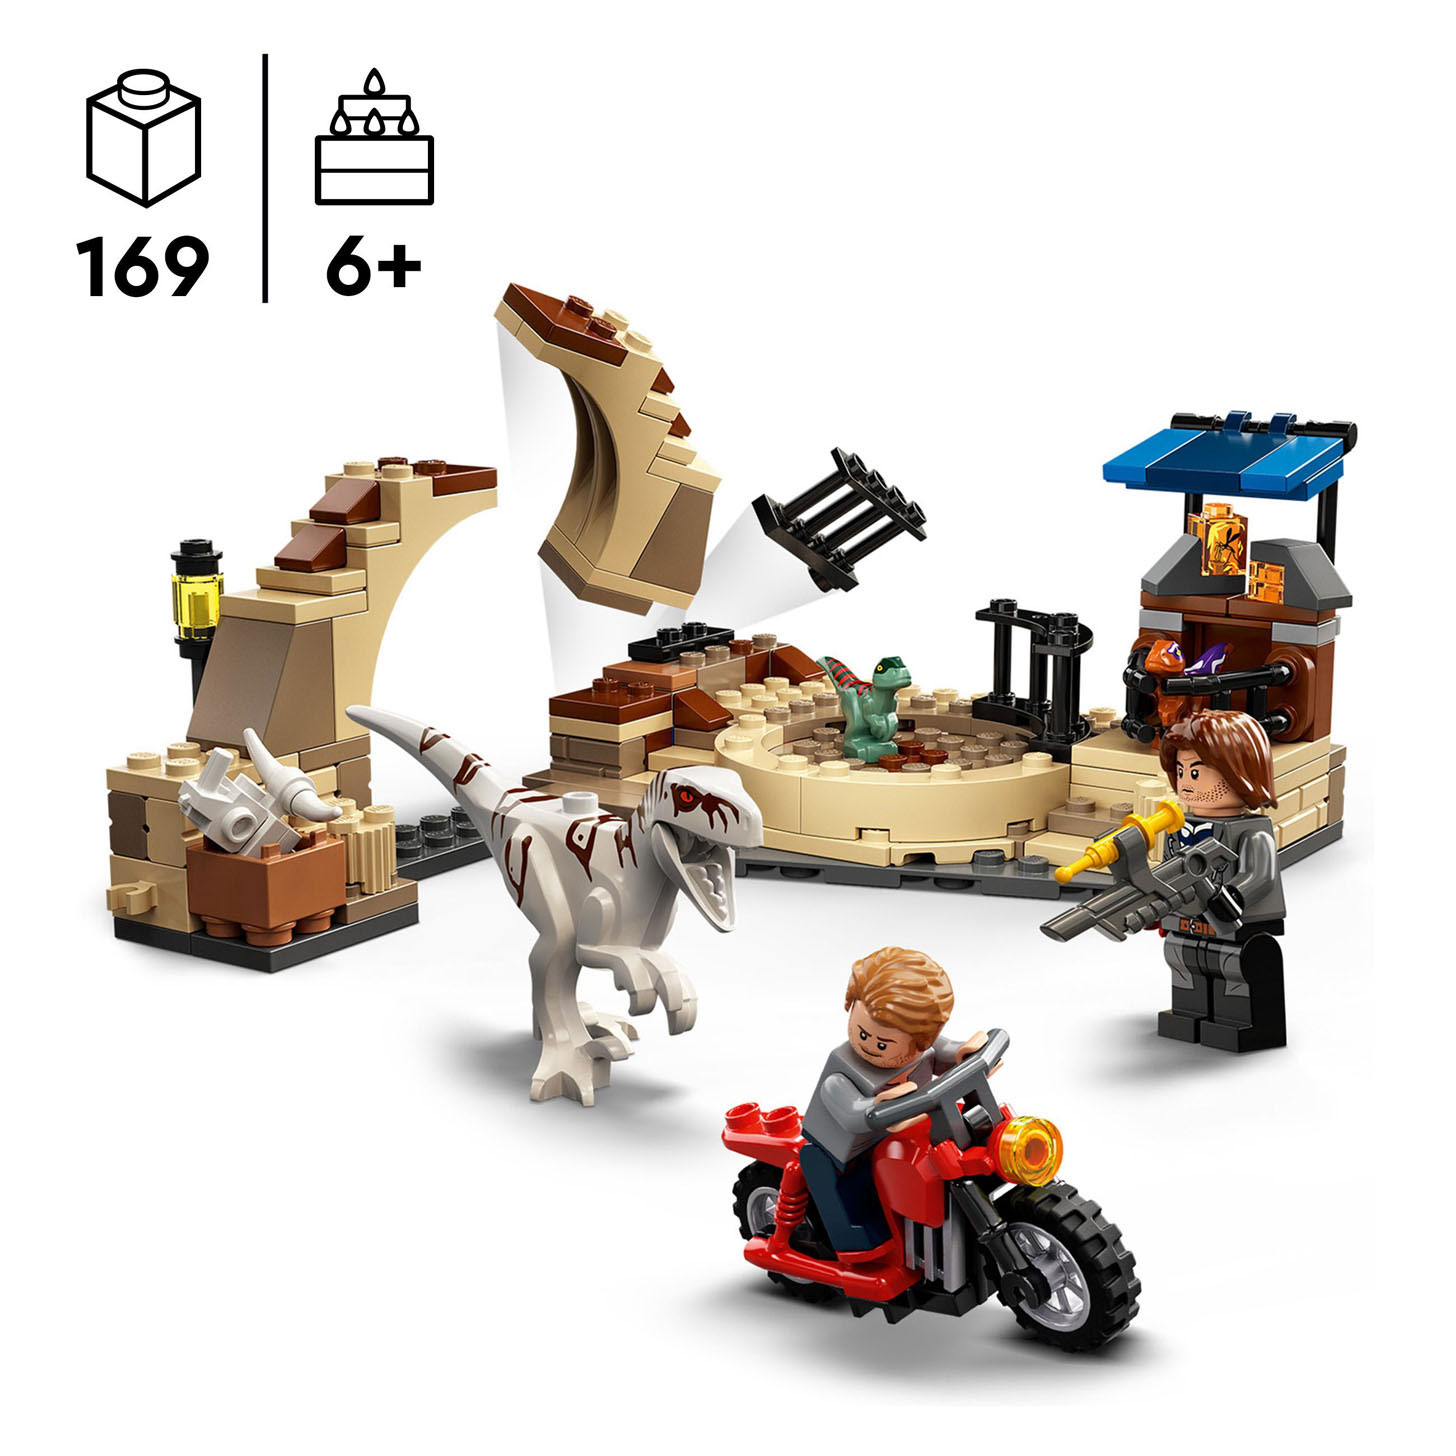 LEGO Jurassic 76945 Atrocirapractor Motorachtervolging